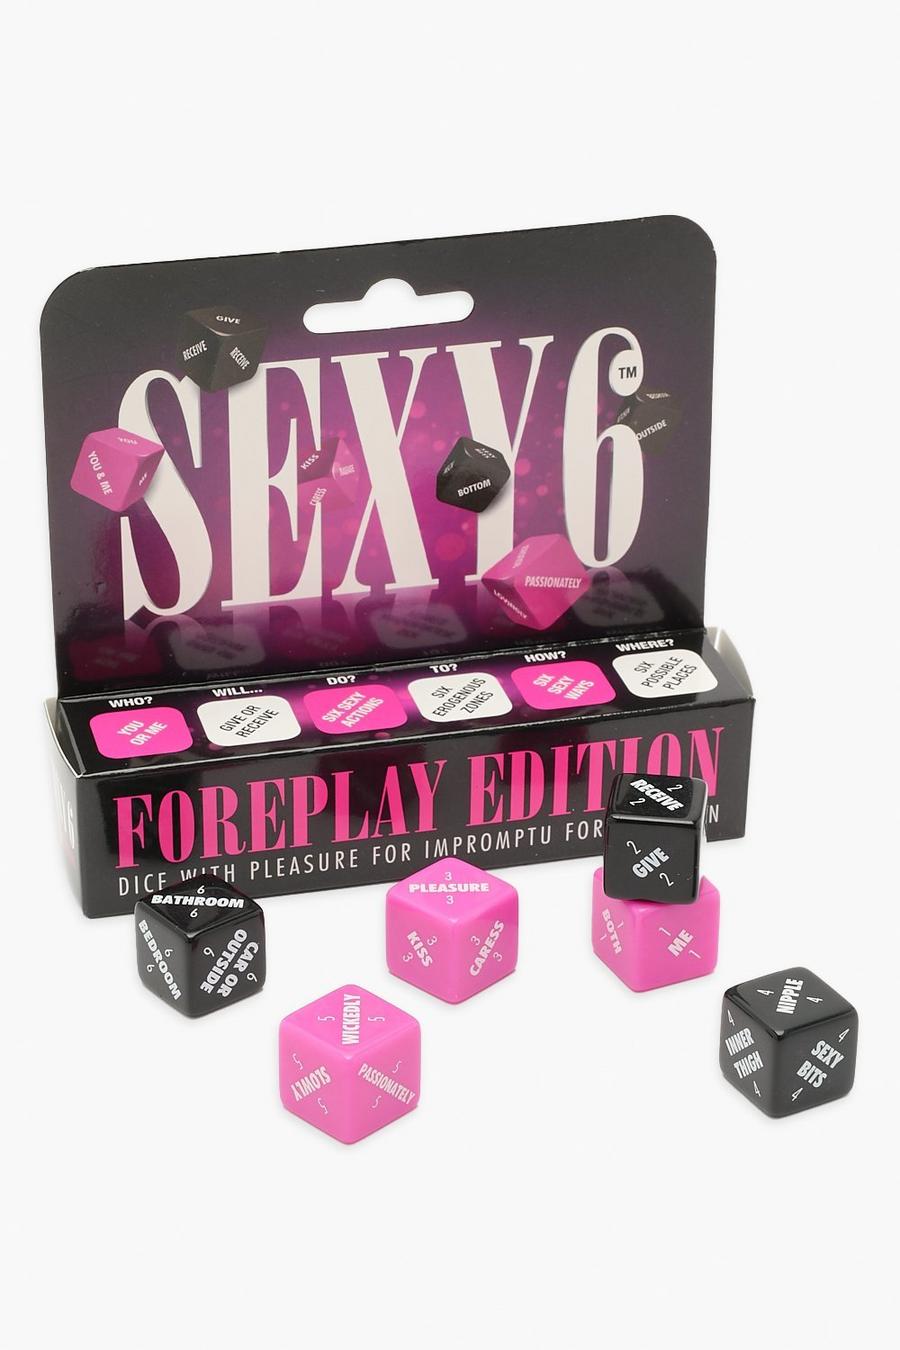 Sexy 6 Wüfel Vorspiel-Edition, Pink image number 1